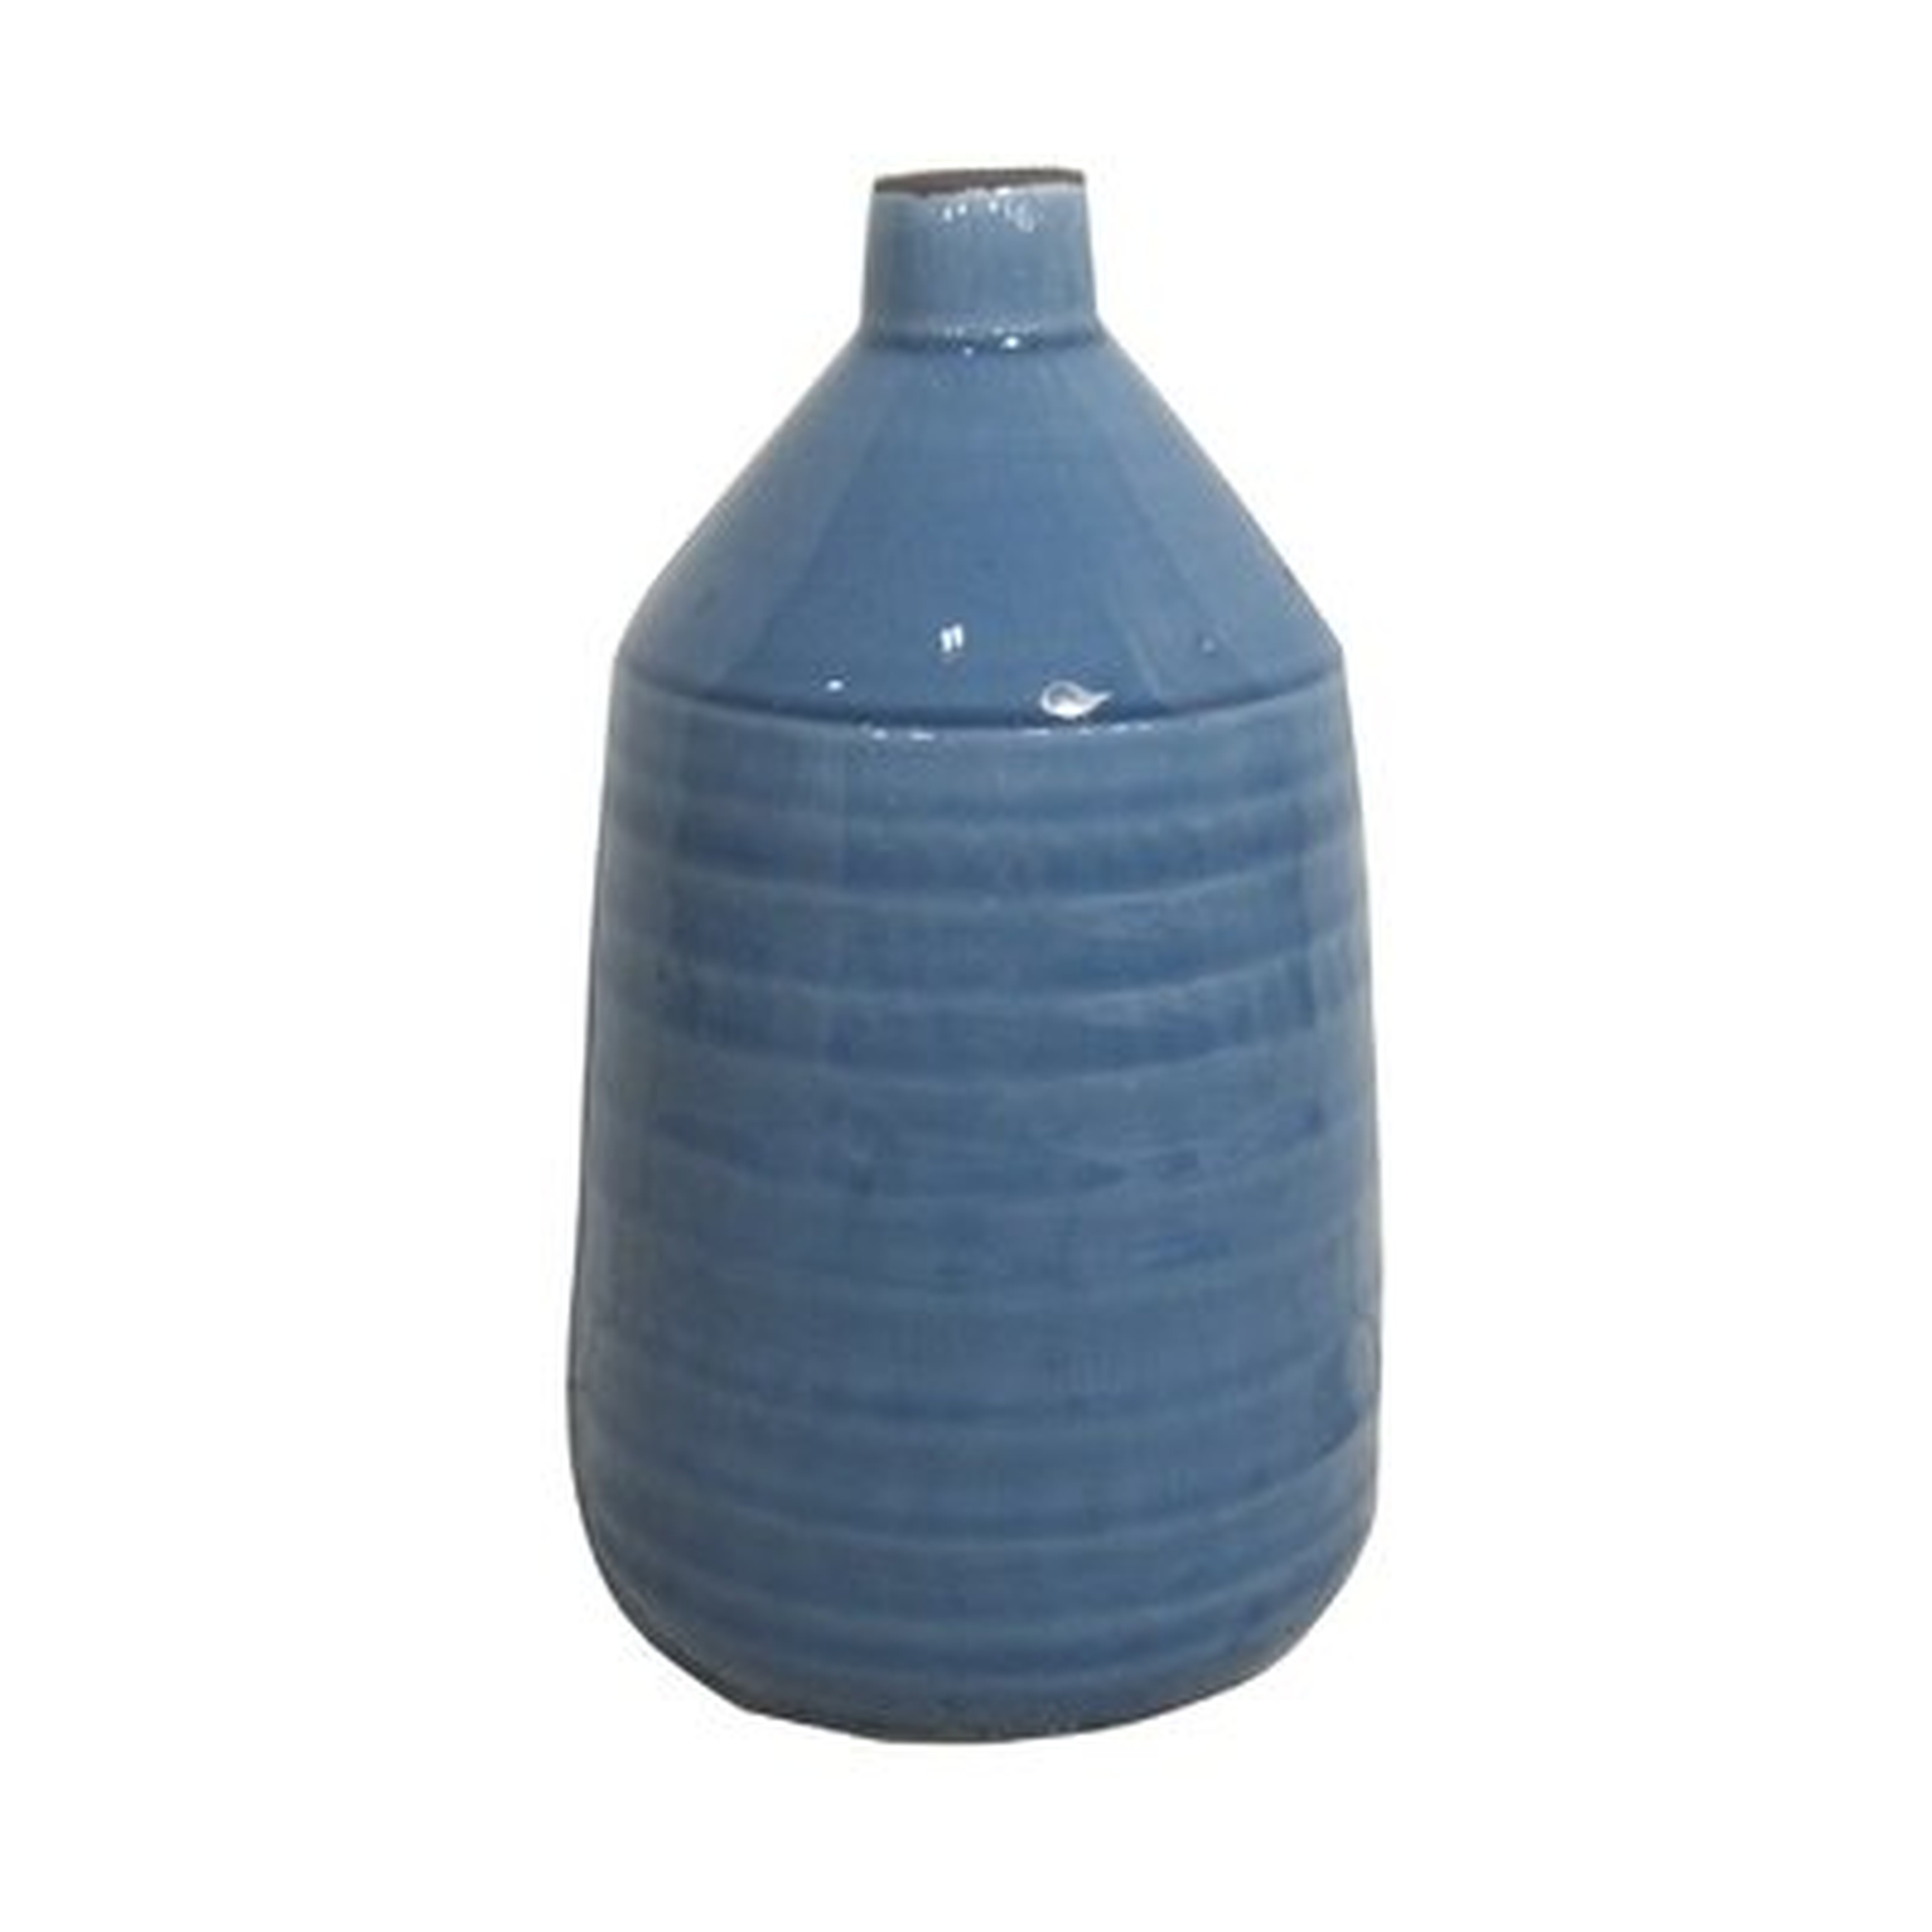 Bigler Ceramic Table Vase - Wayfair